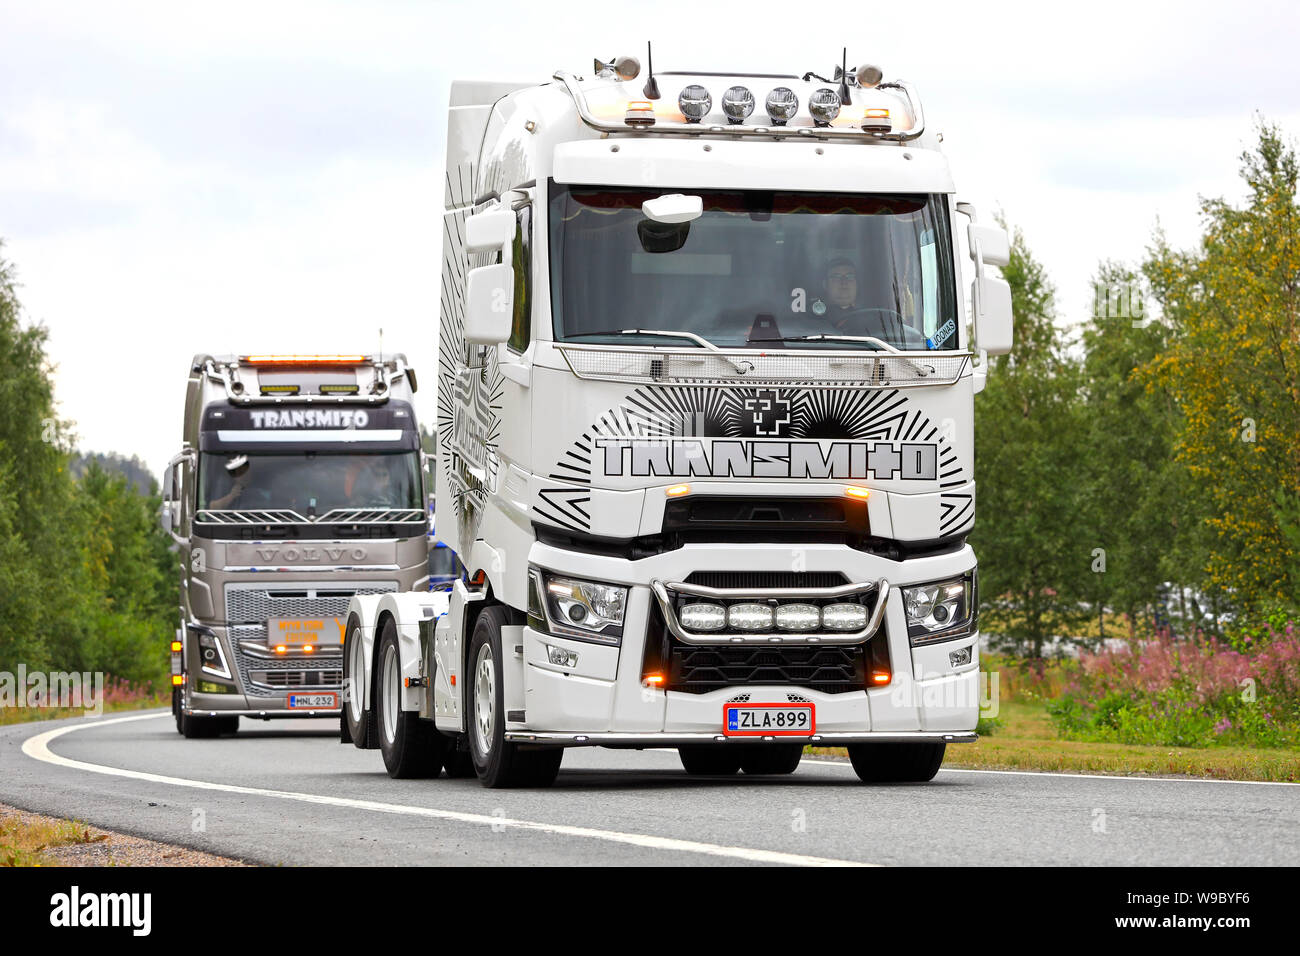 Lempaala, Finnland. August 8, 2019. Schwarze und weiße angepasste Renault Trucks T LKW- und Volvo FH von Transmito Oy im Konvoi zu Power Truck Show 2019. Stockfoto